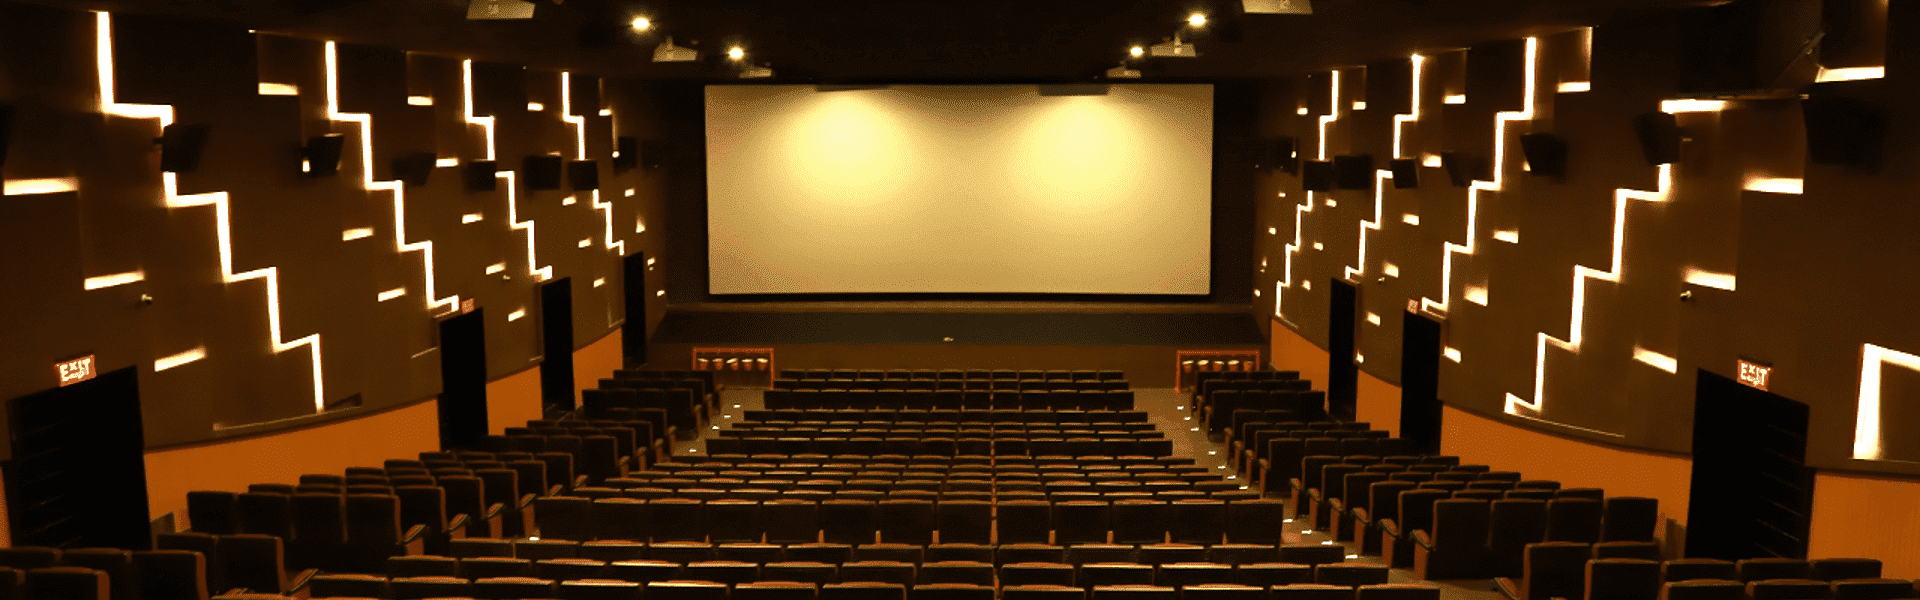 full size cinema screen